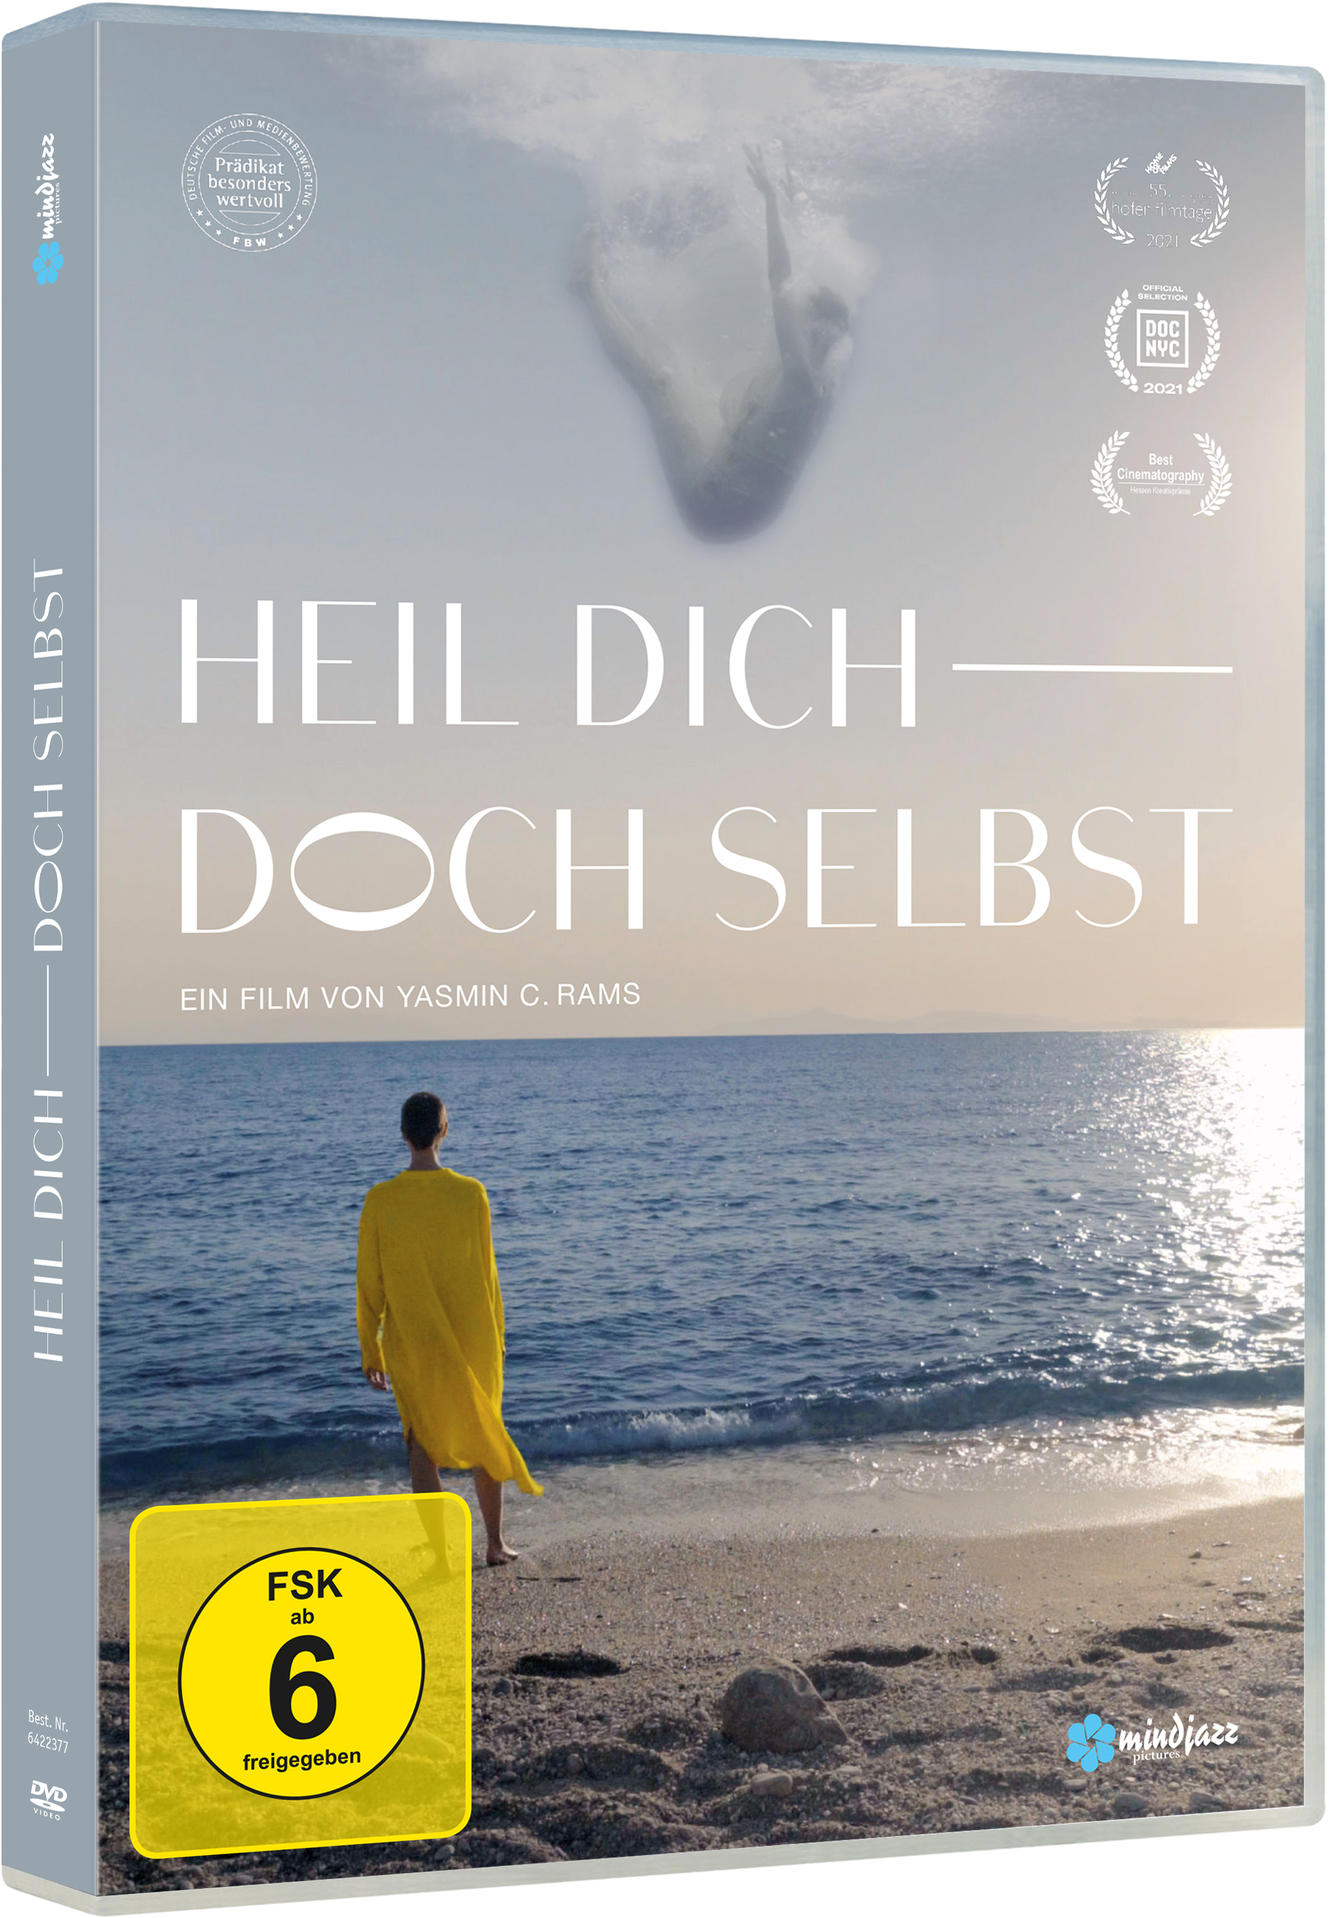 Edition Mediabook dich Uncut doch Heil selbst DVD Limitierte